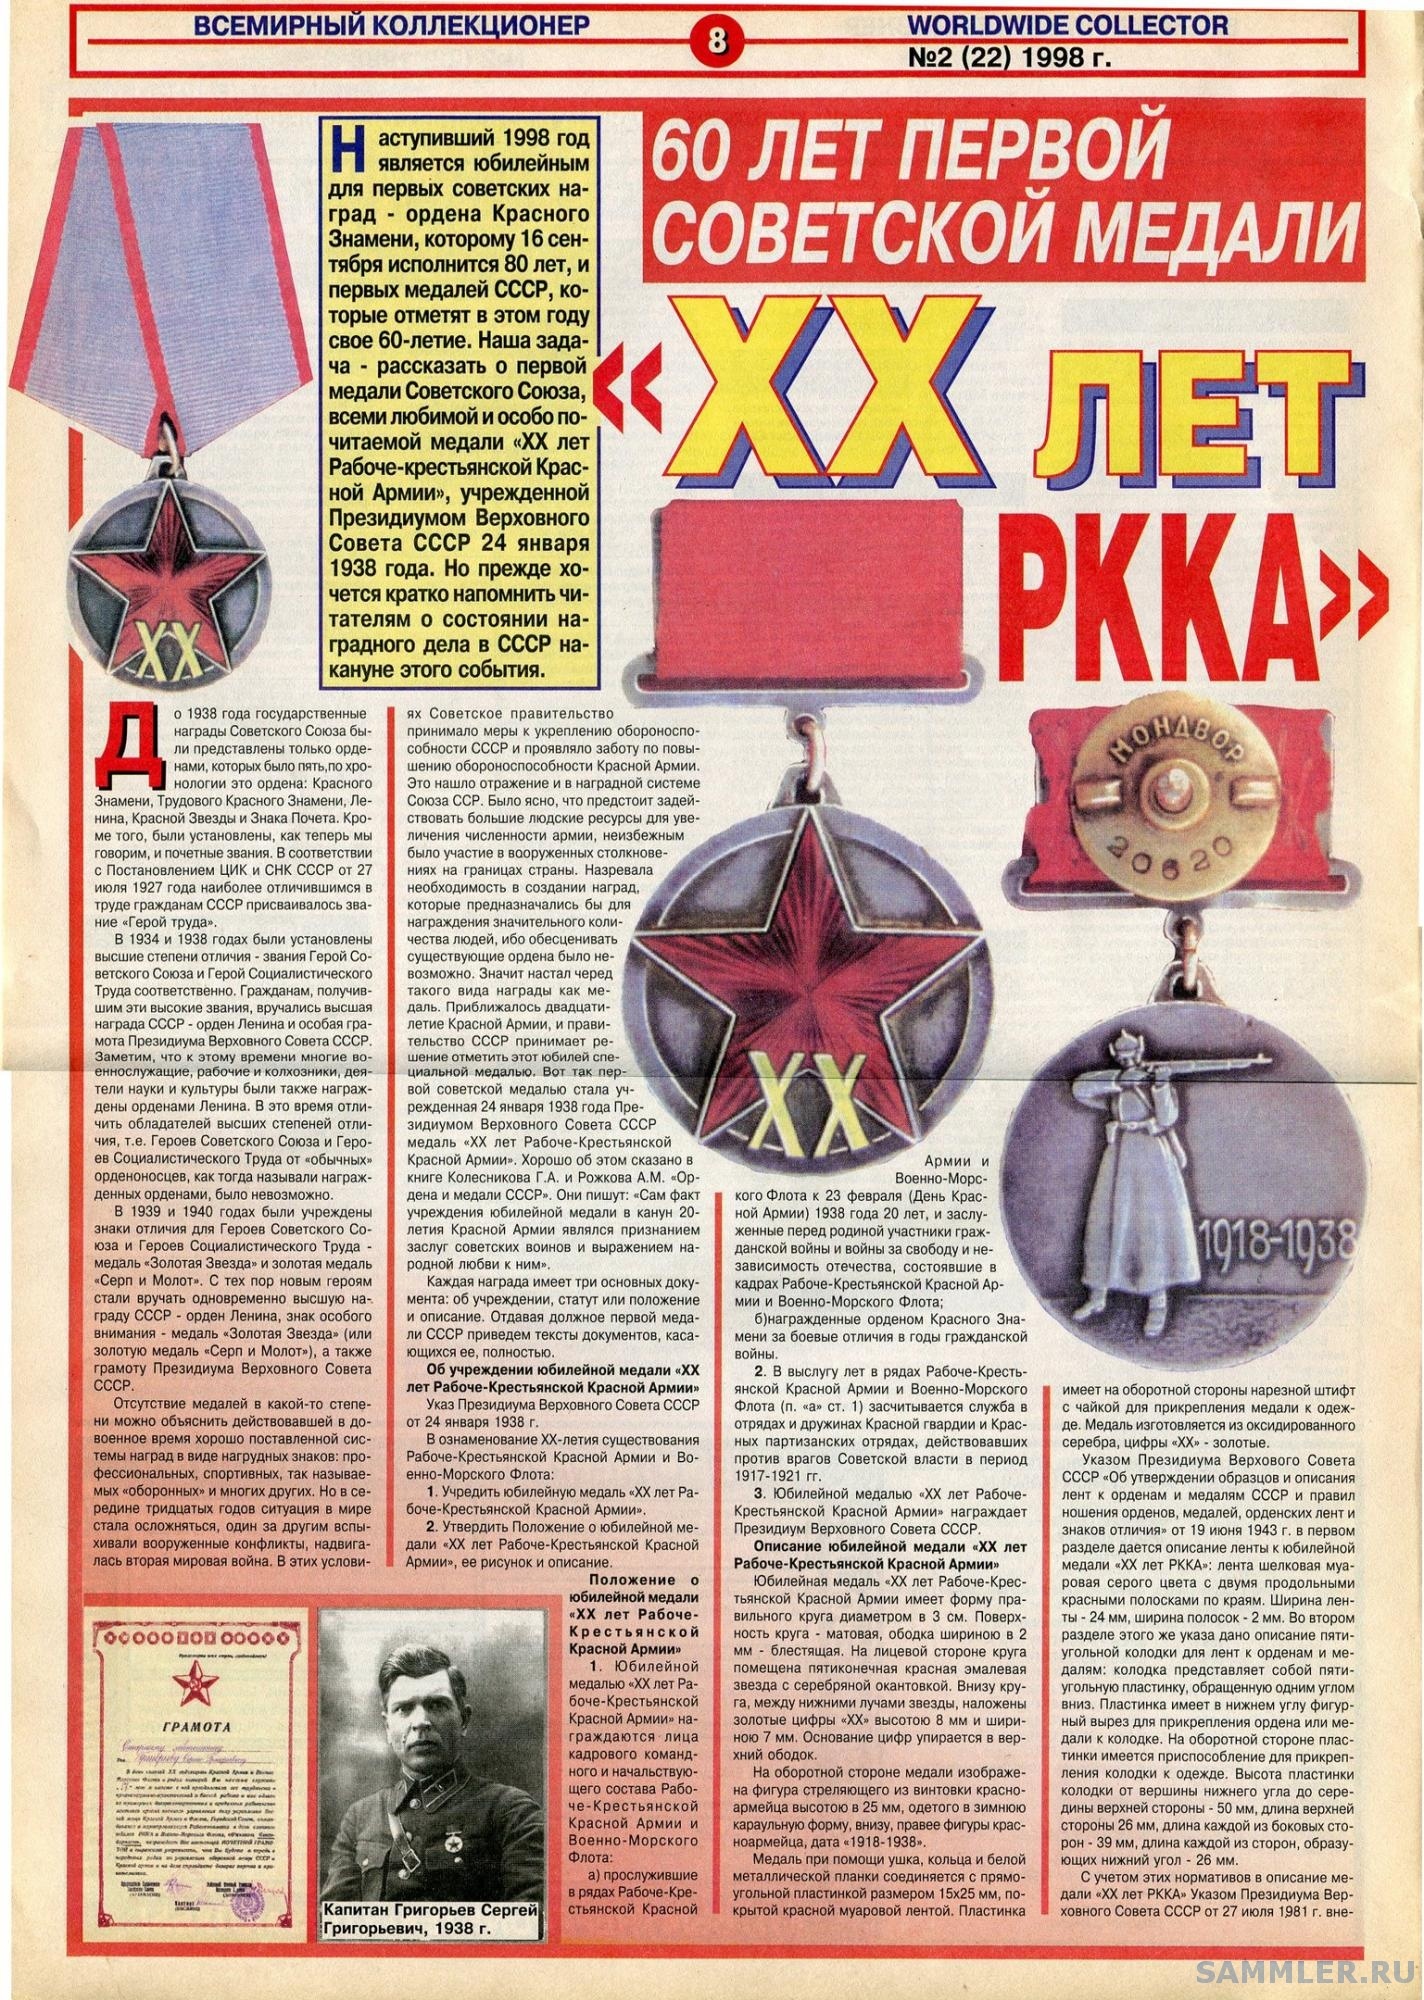 статья 60 лет первой советской медали - В. Григорьев 1.jpg